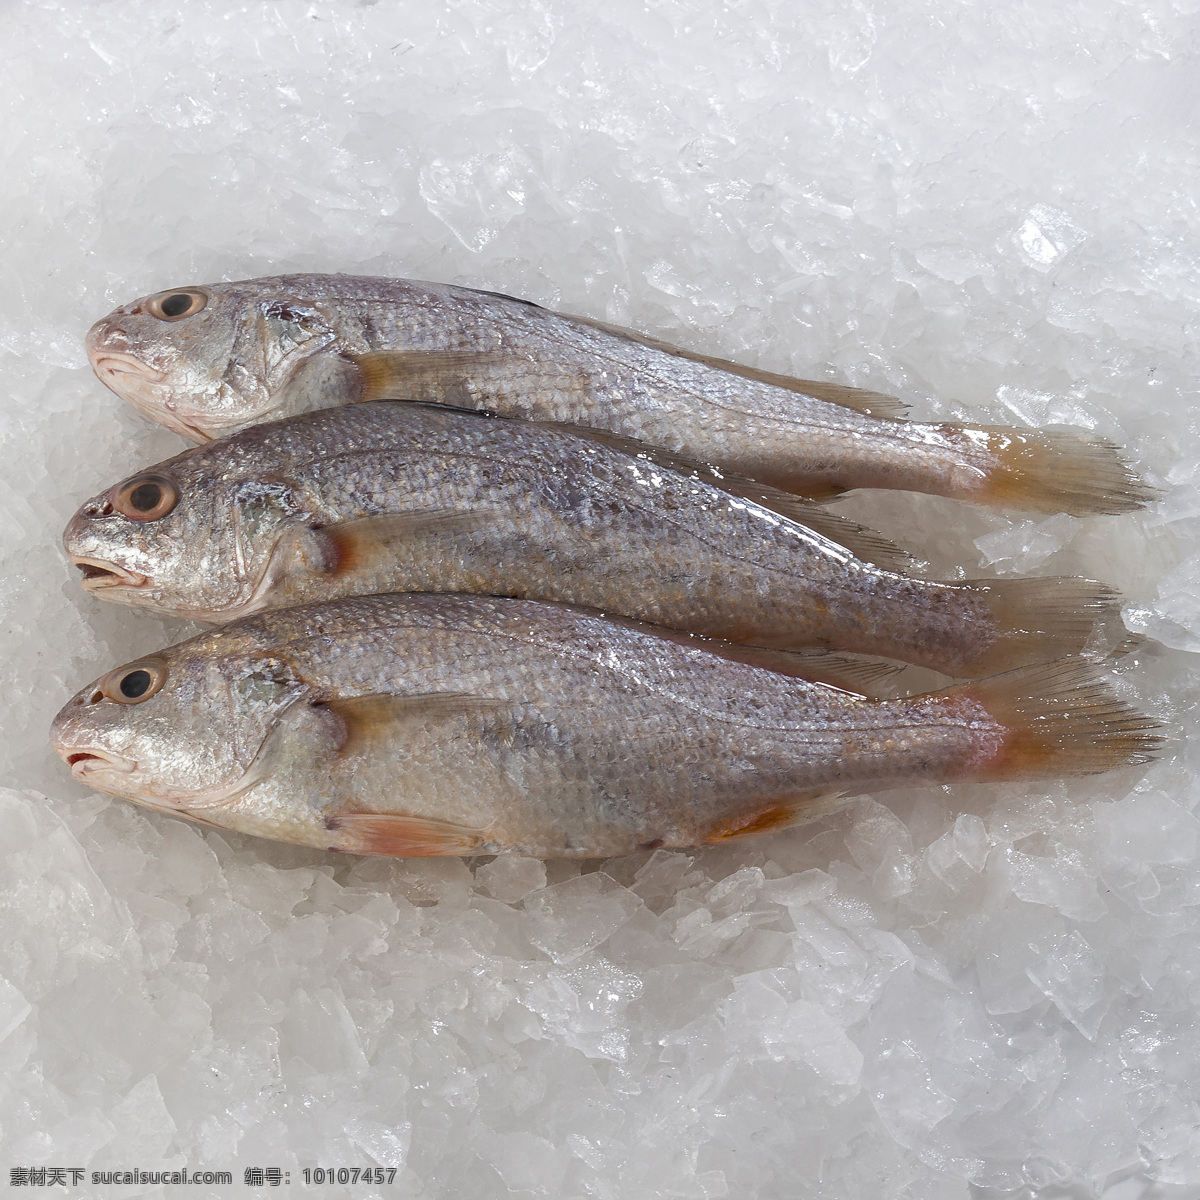 米鱼 海鲜 宁波海鲜 鱼 鲜活鱼 海鱼 东海海鲜 冰鲜 盒马生鲜 生鲜 美食菜肴 生物世界 鱼类